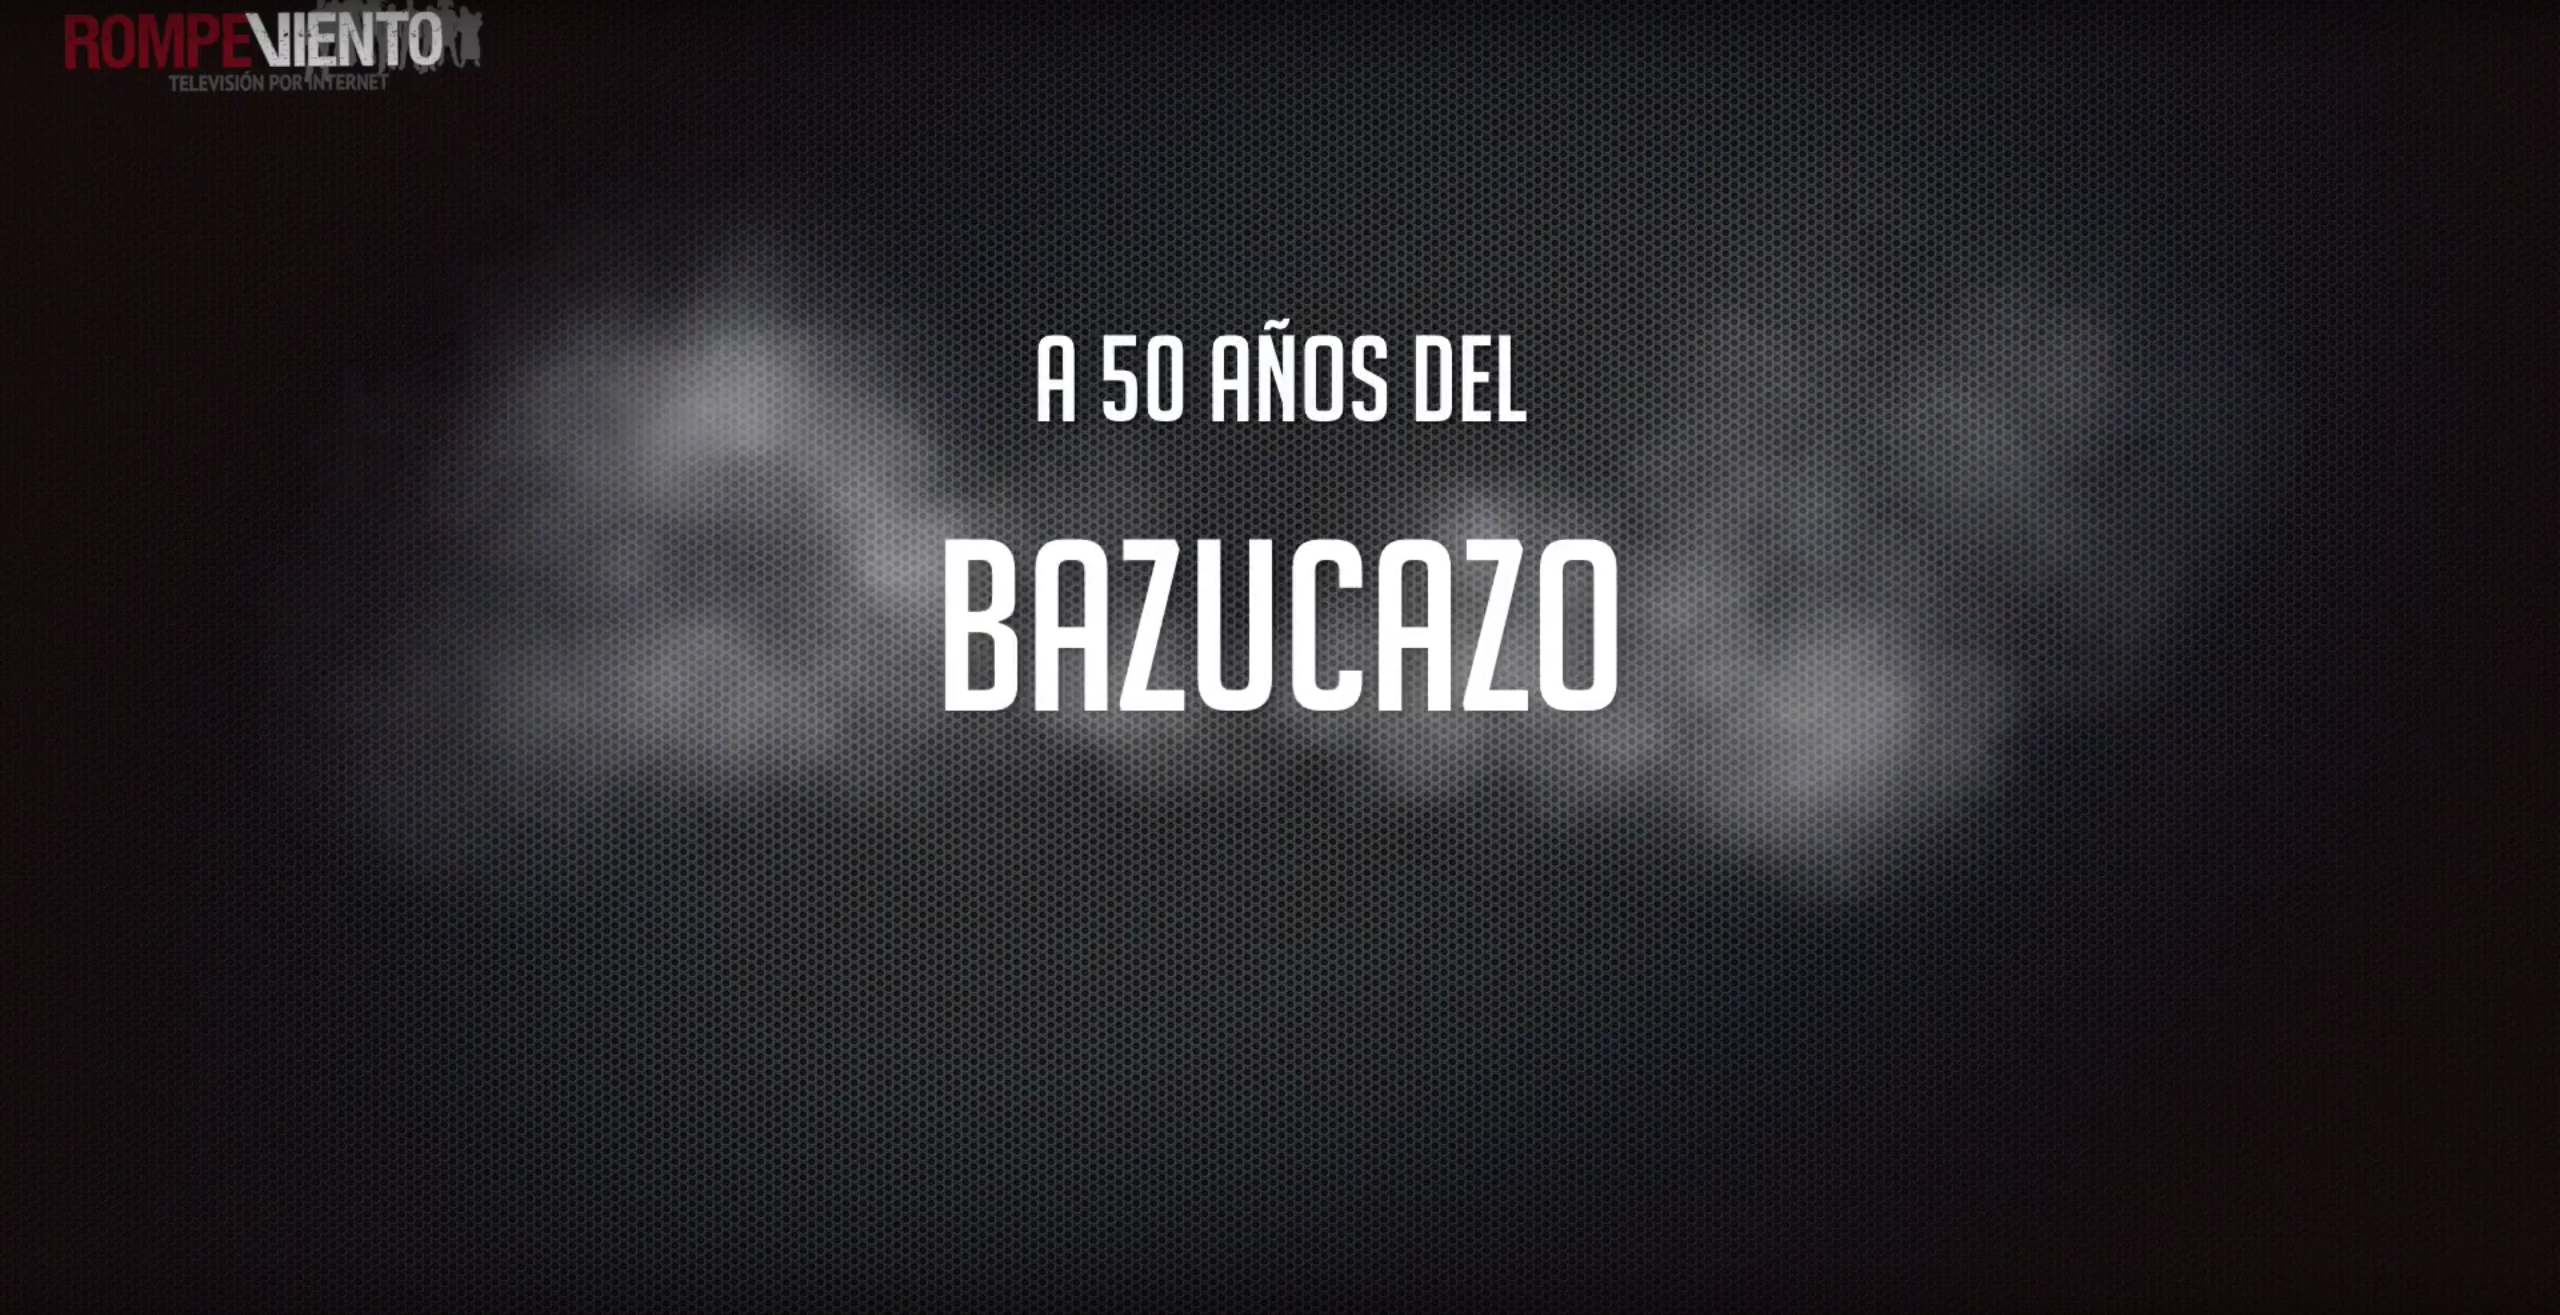 Videonota - Bazucazo de 1968, 50 años del movimiento estudiantil - 01/08/2018